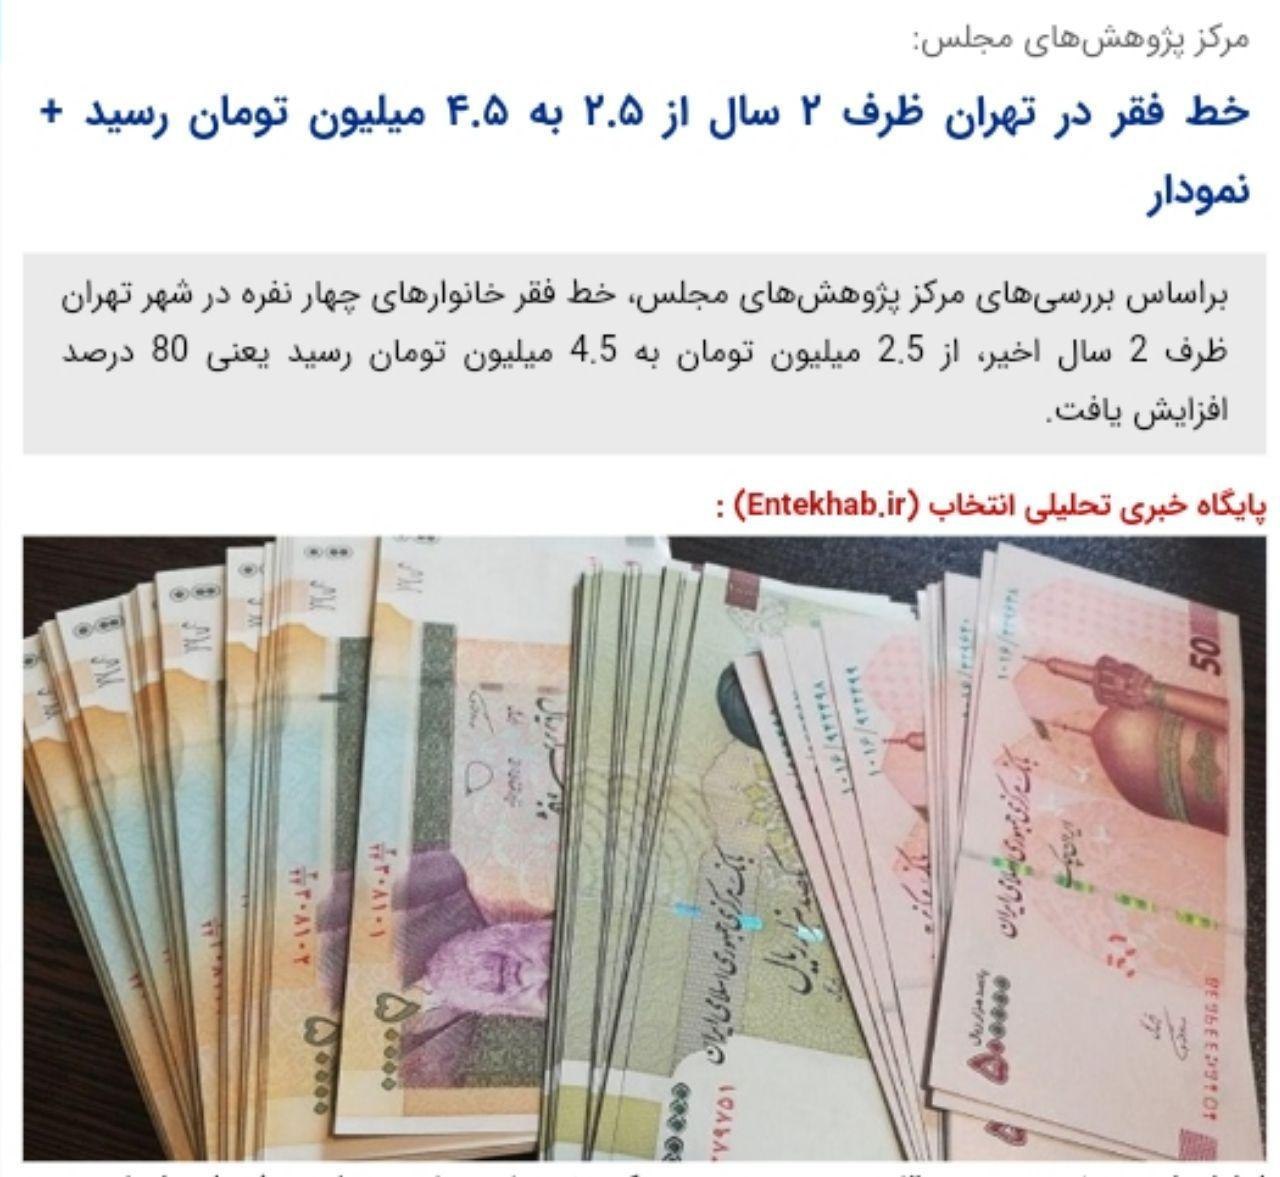 ️مرکز پژوهش‌های مجلس: خط فقر در تهران ظرف ۲ سال از ۲.۵ به ۴.۵ میلیون تومان رسید